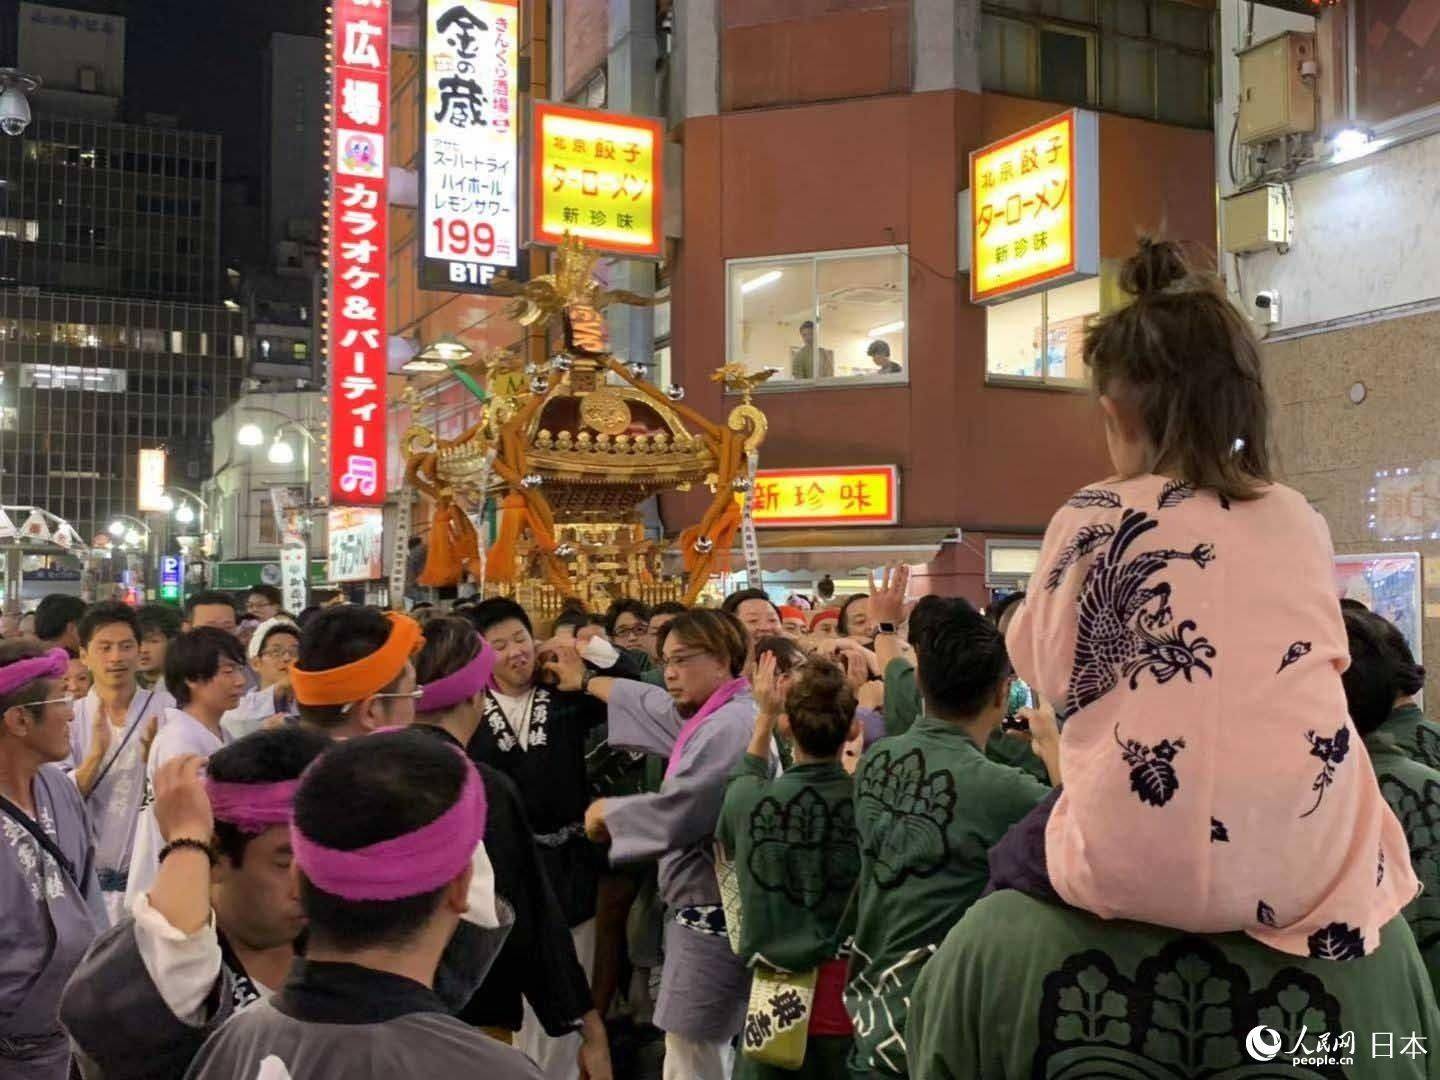 第52届fukuro祭 庆典活动在东京池袋举办 日本频道 人民网